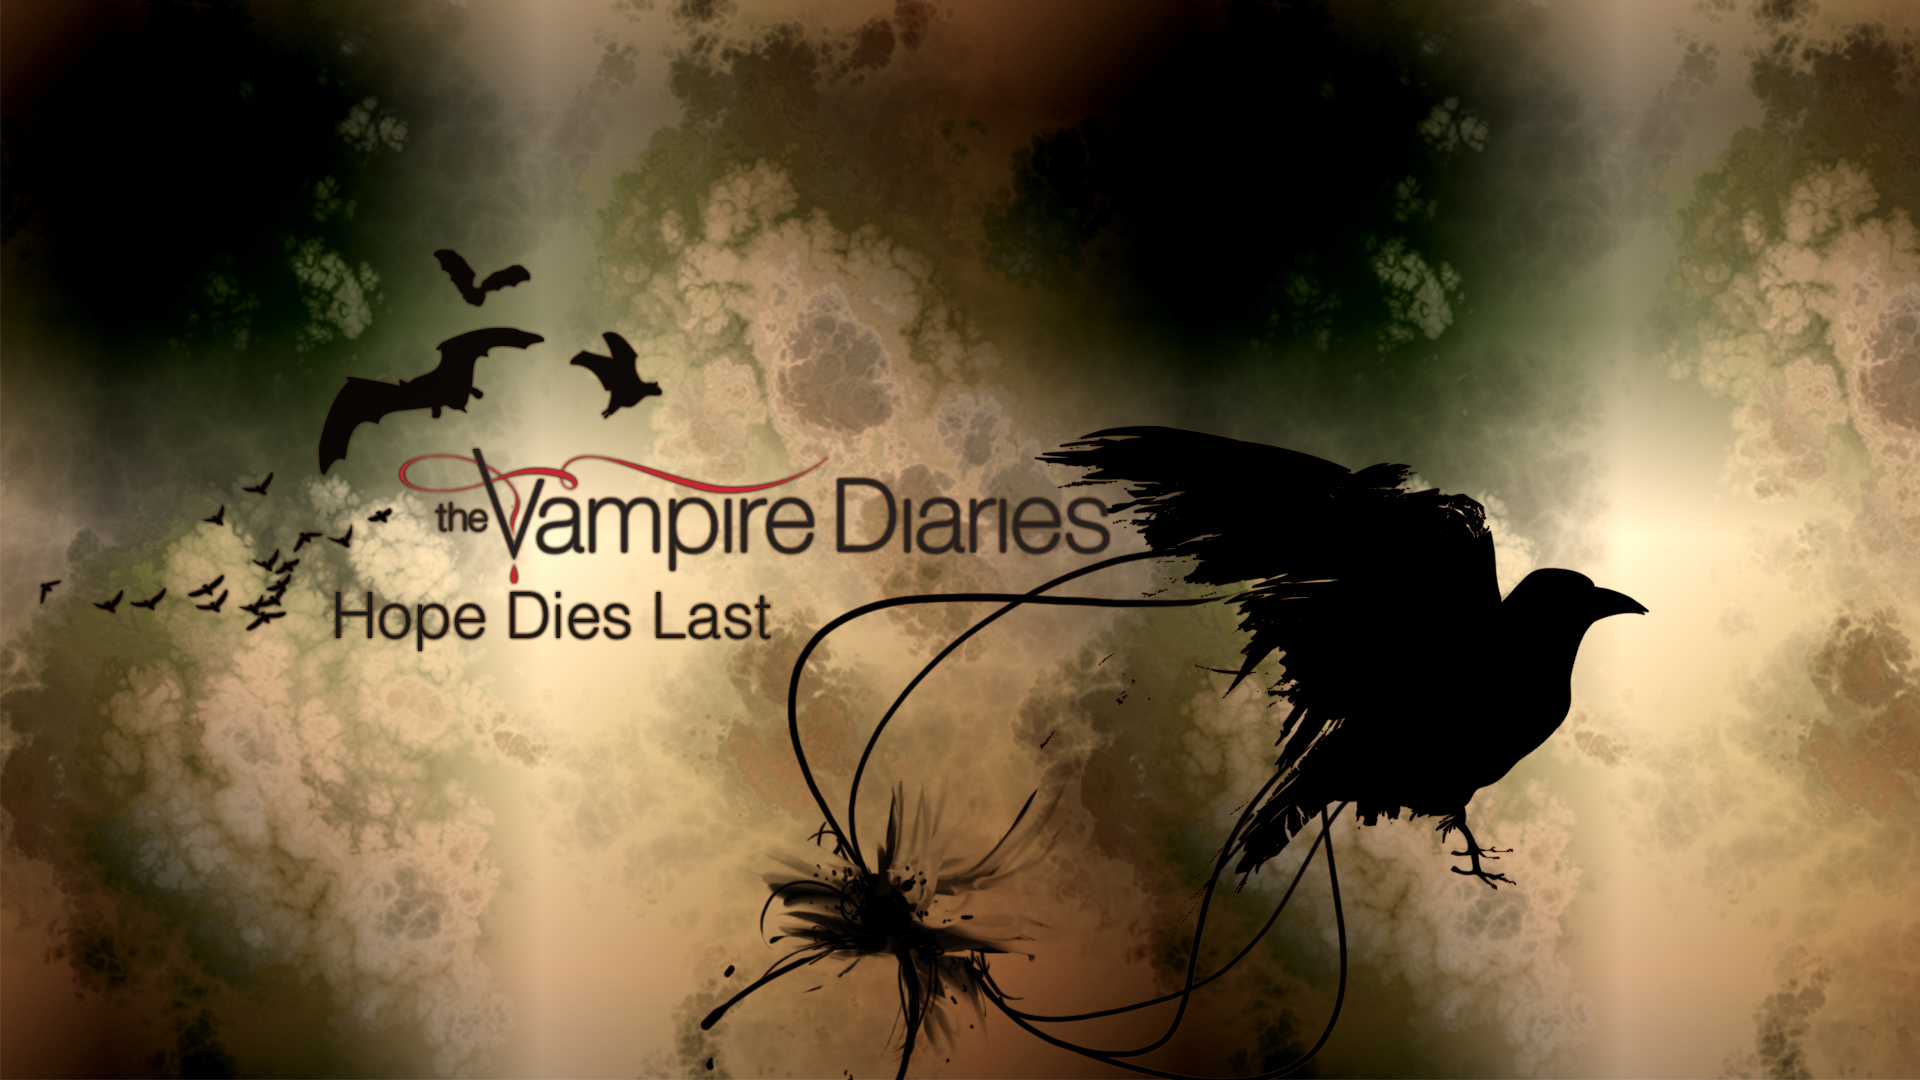 The Vampire Diaries Image Wallpaper